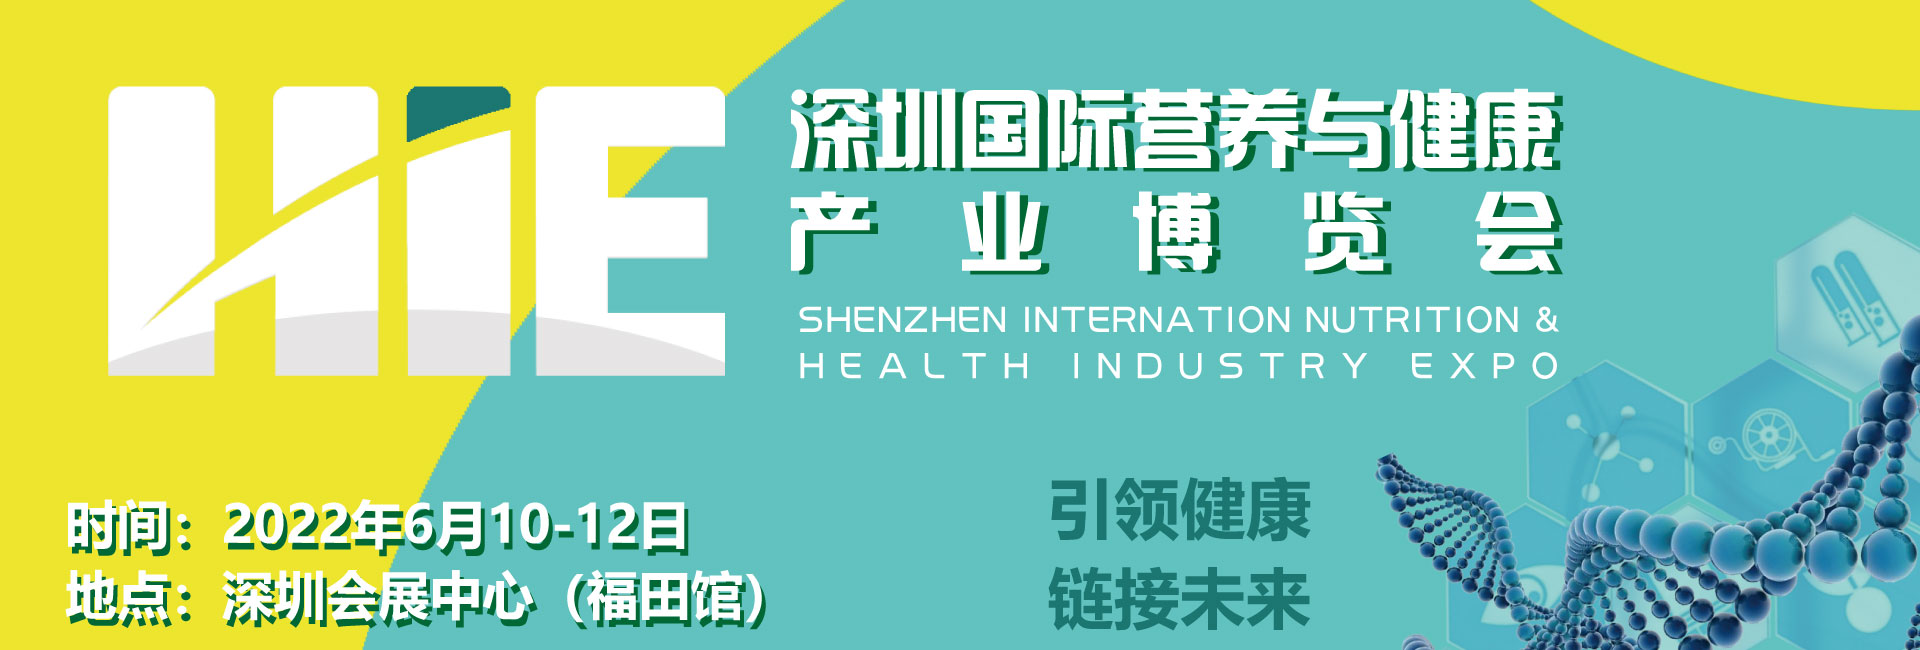 2022第十二届深圳国际营养与健康产业博览会欢迎您